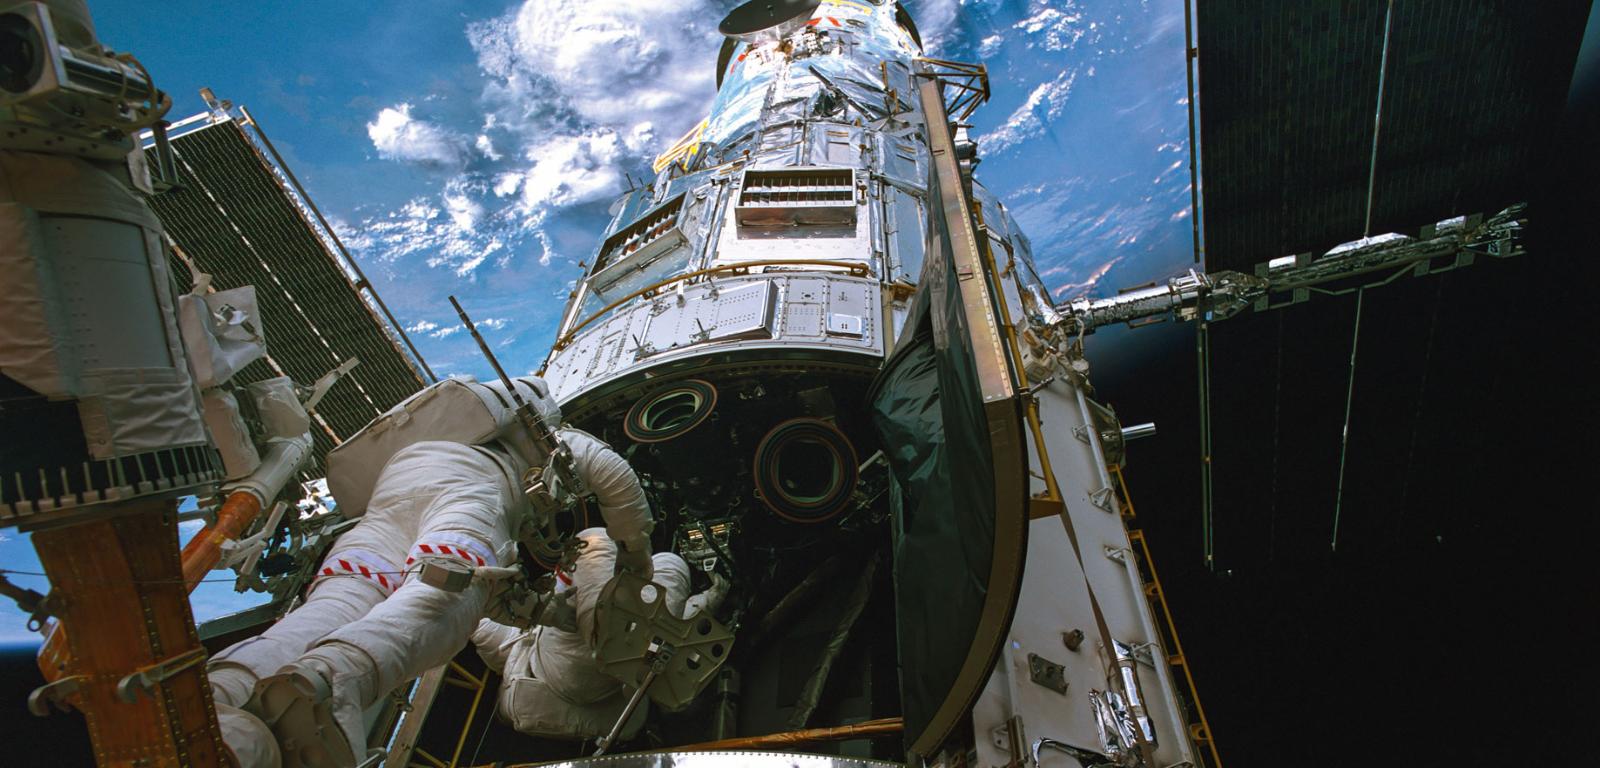 Czwarta serwisowa misja (STS-109) teleskopu Hubble’a zrealizowana przez załogę wahadłowca Columbia, 2002 r. Podczas niej astronauci przebywali w przestrzeni kosmicznej łącznie 36 godz.